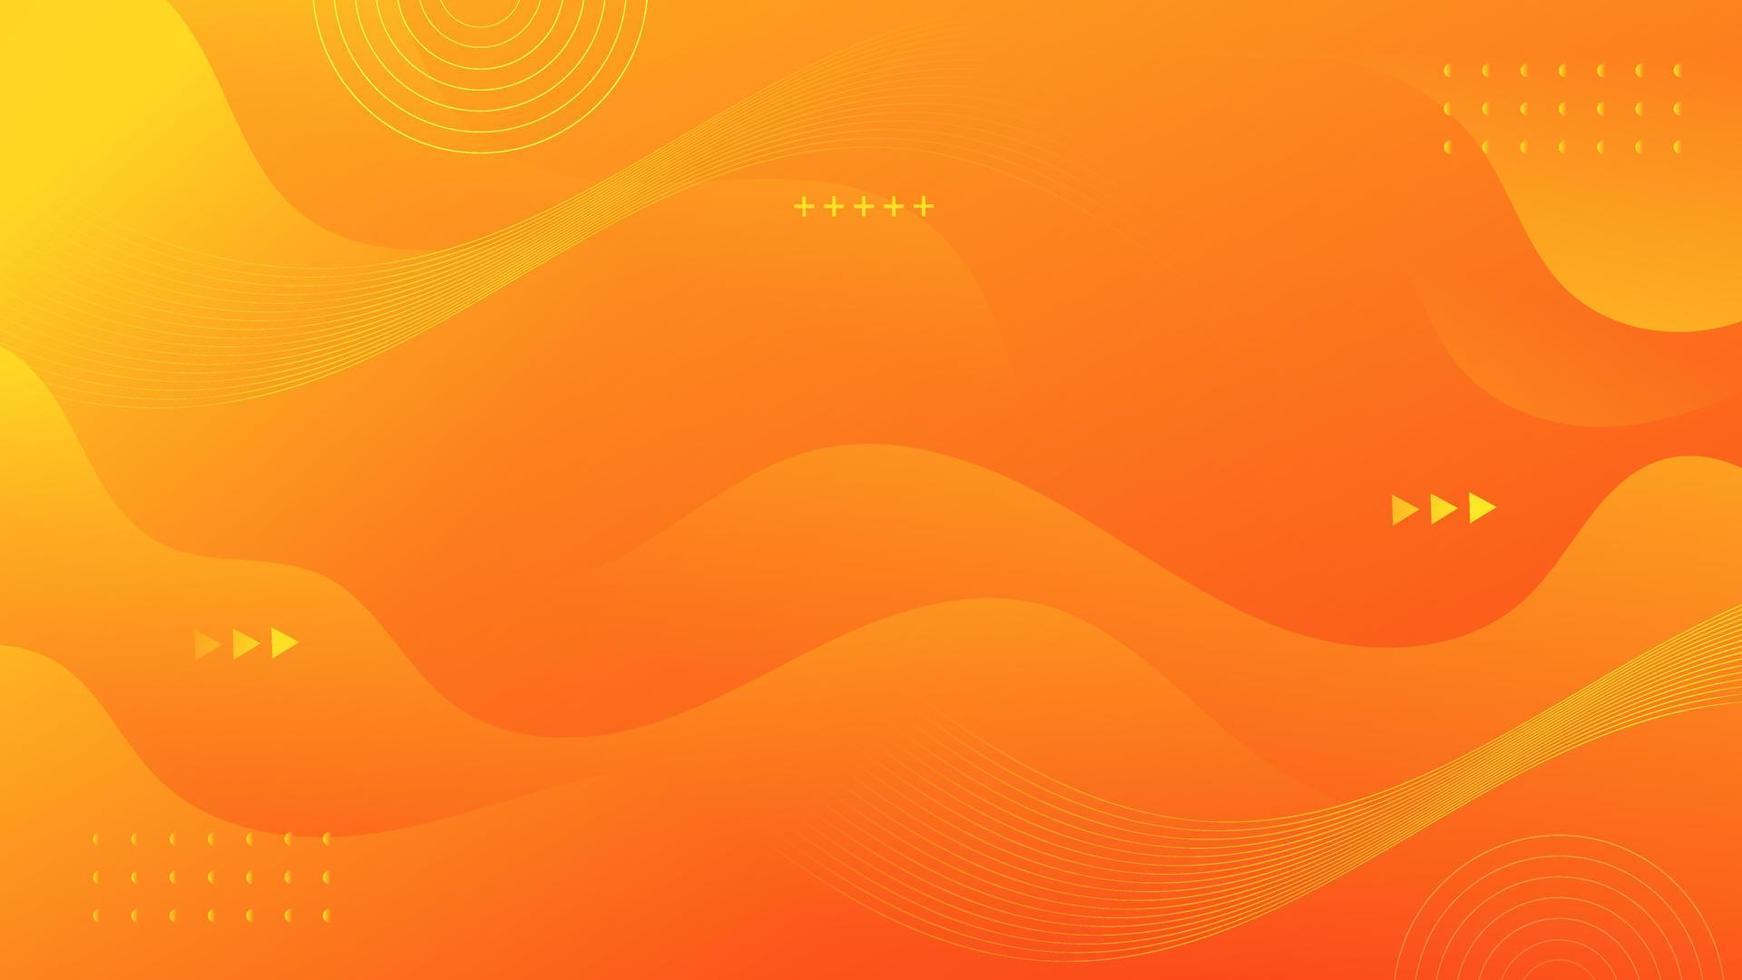 Abstract Gradient  orange  yellow  liquid Wave Background vector